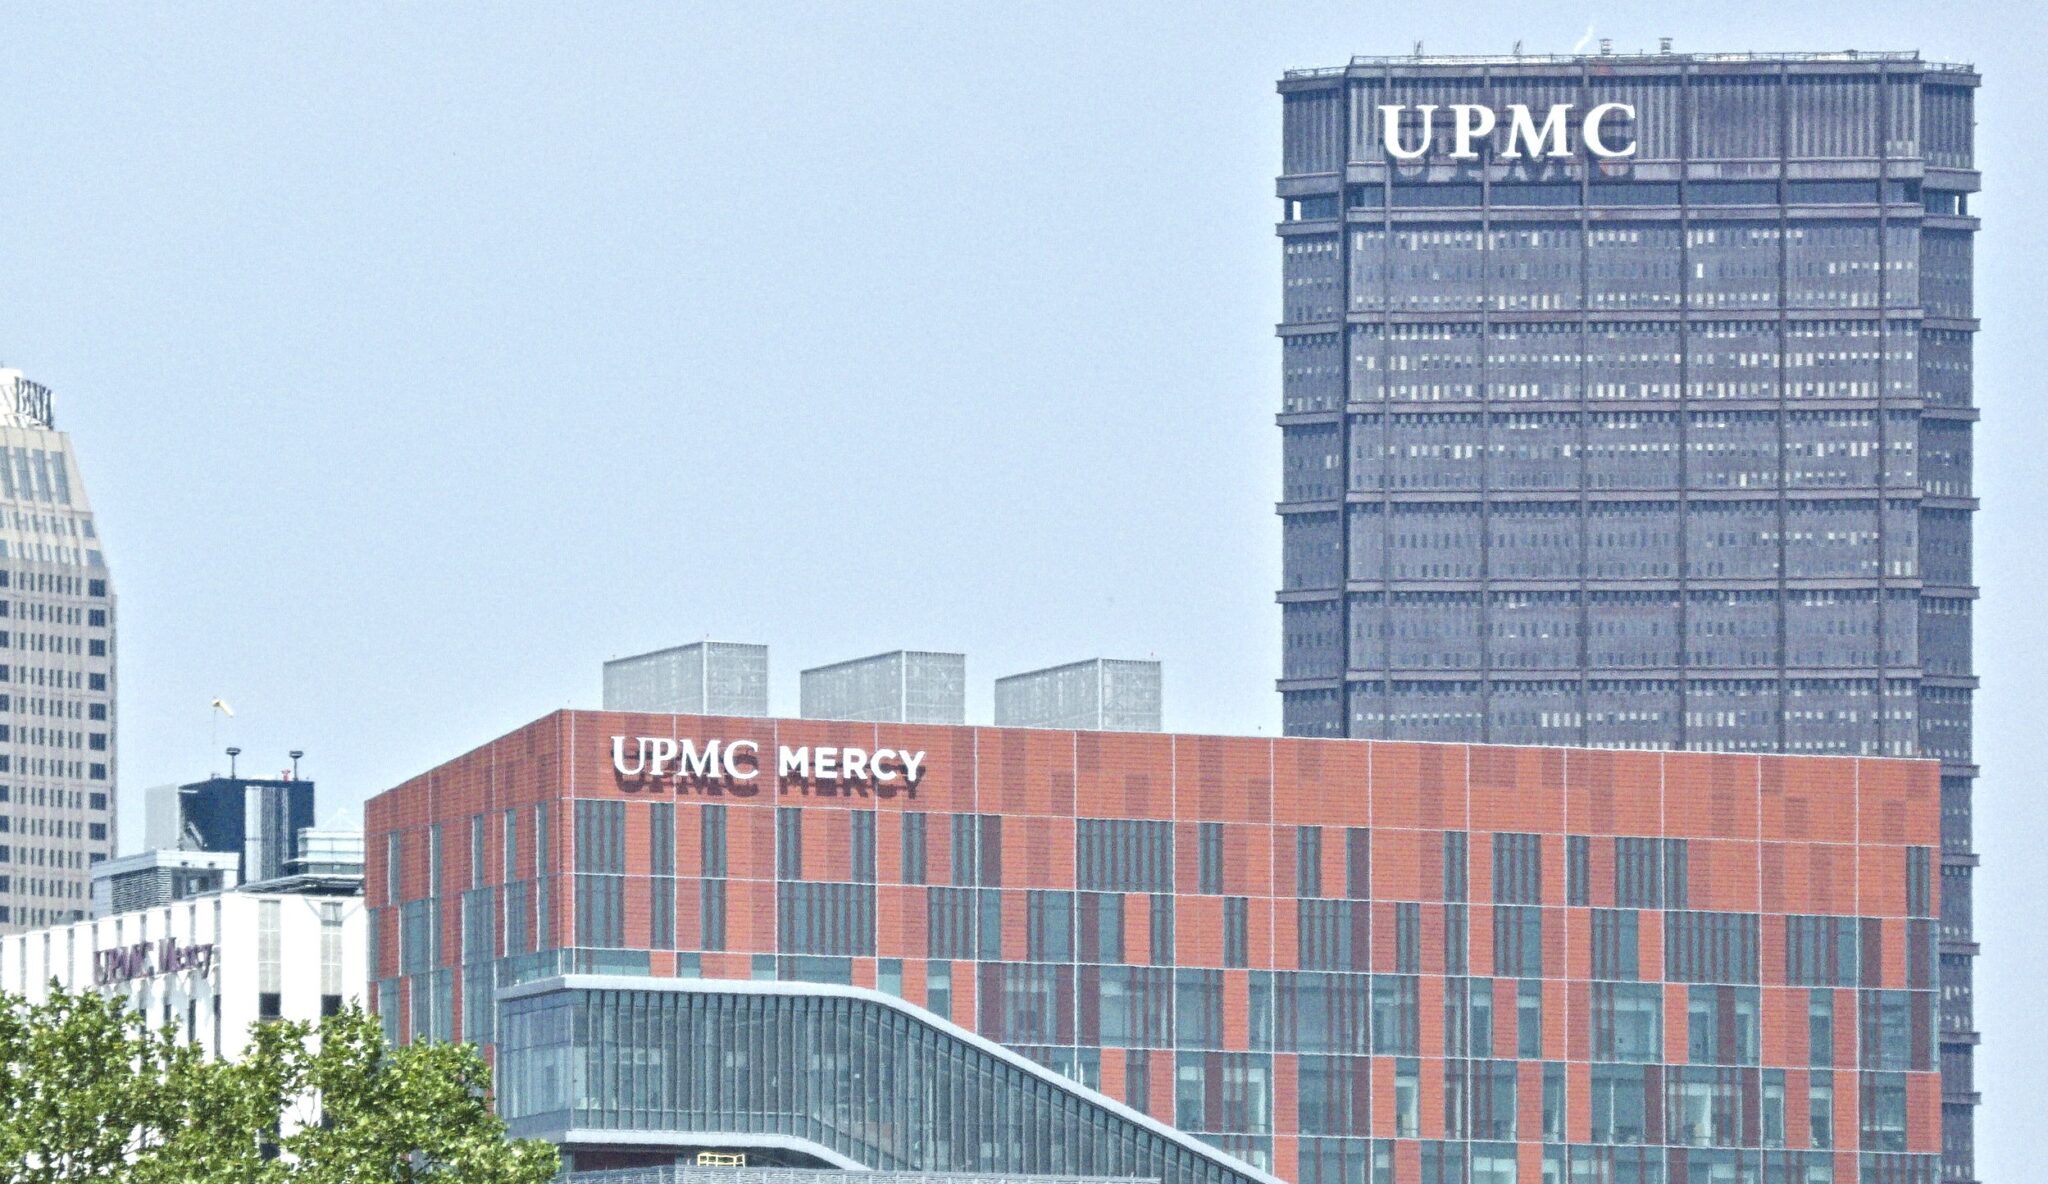 UPMC Campus